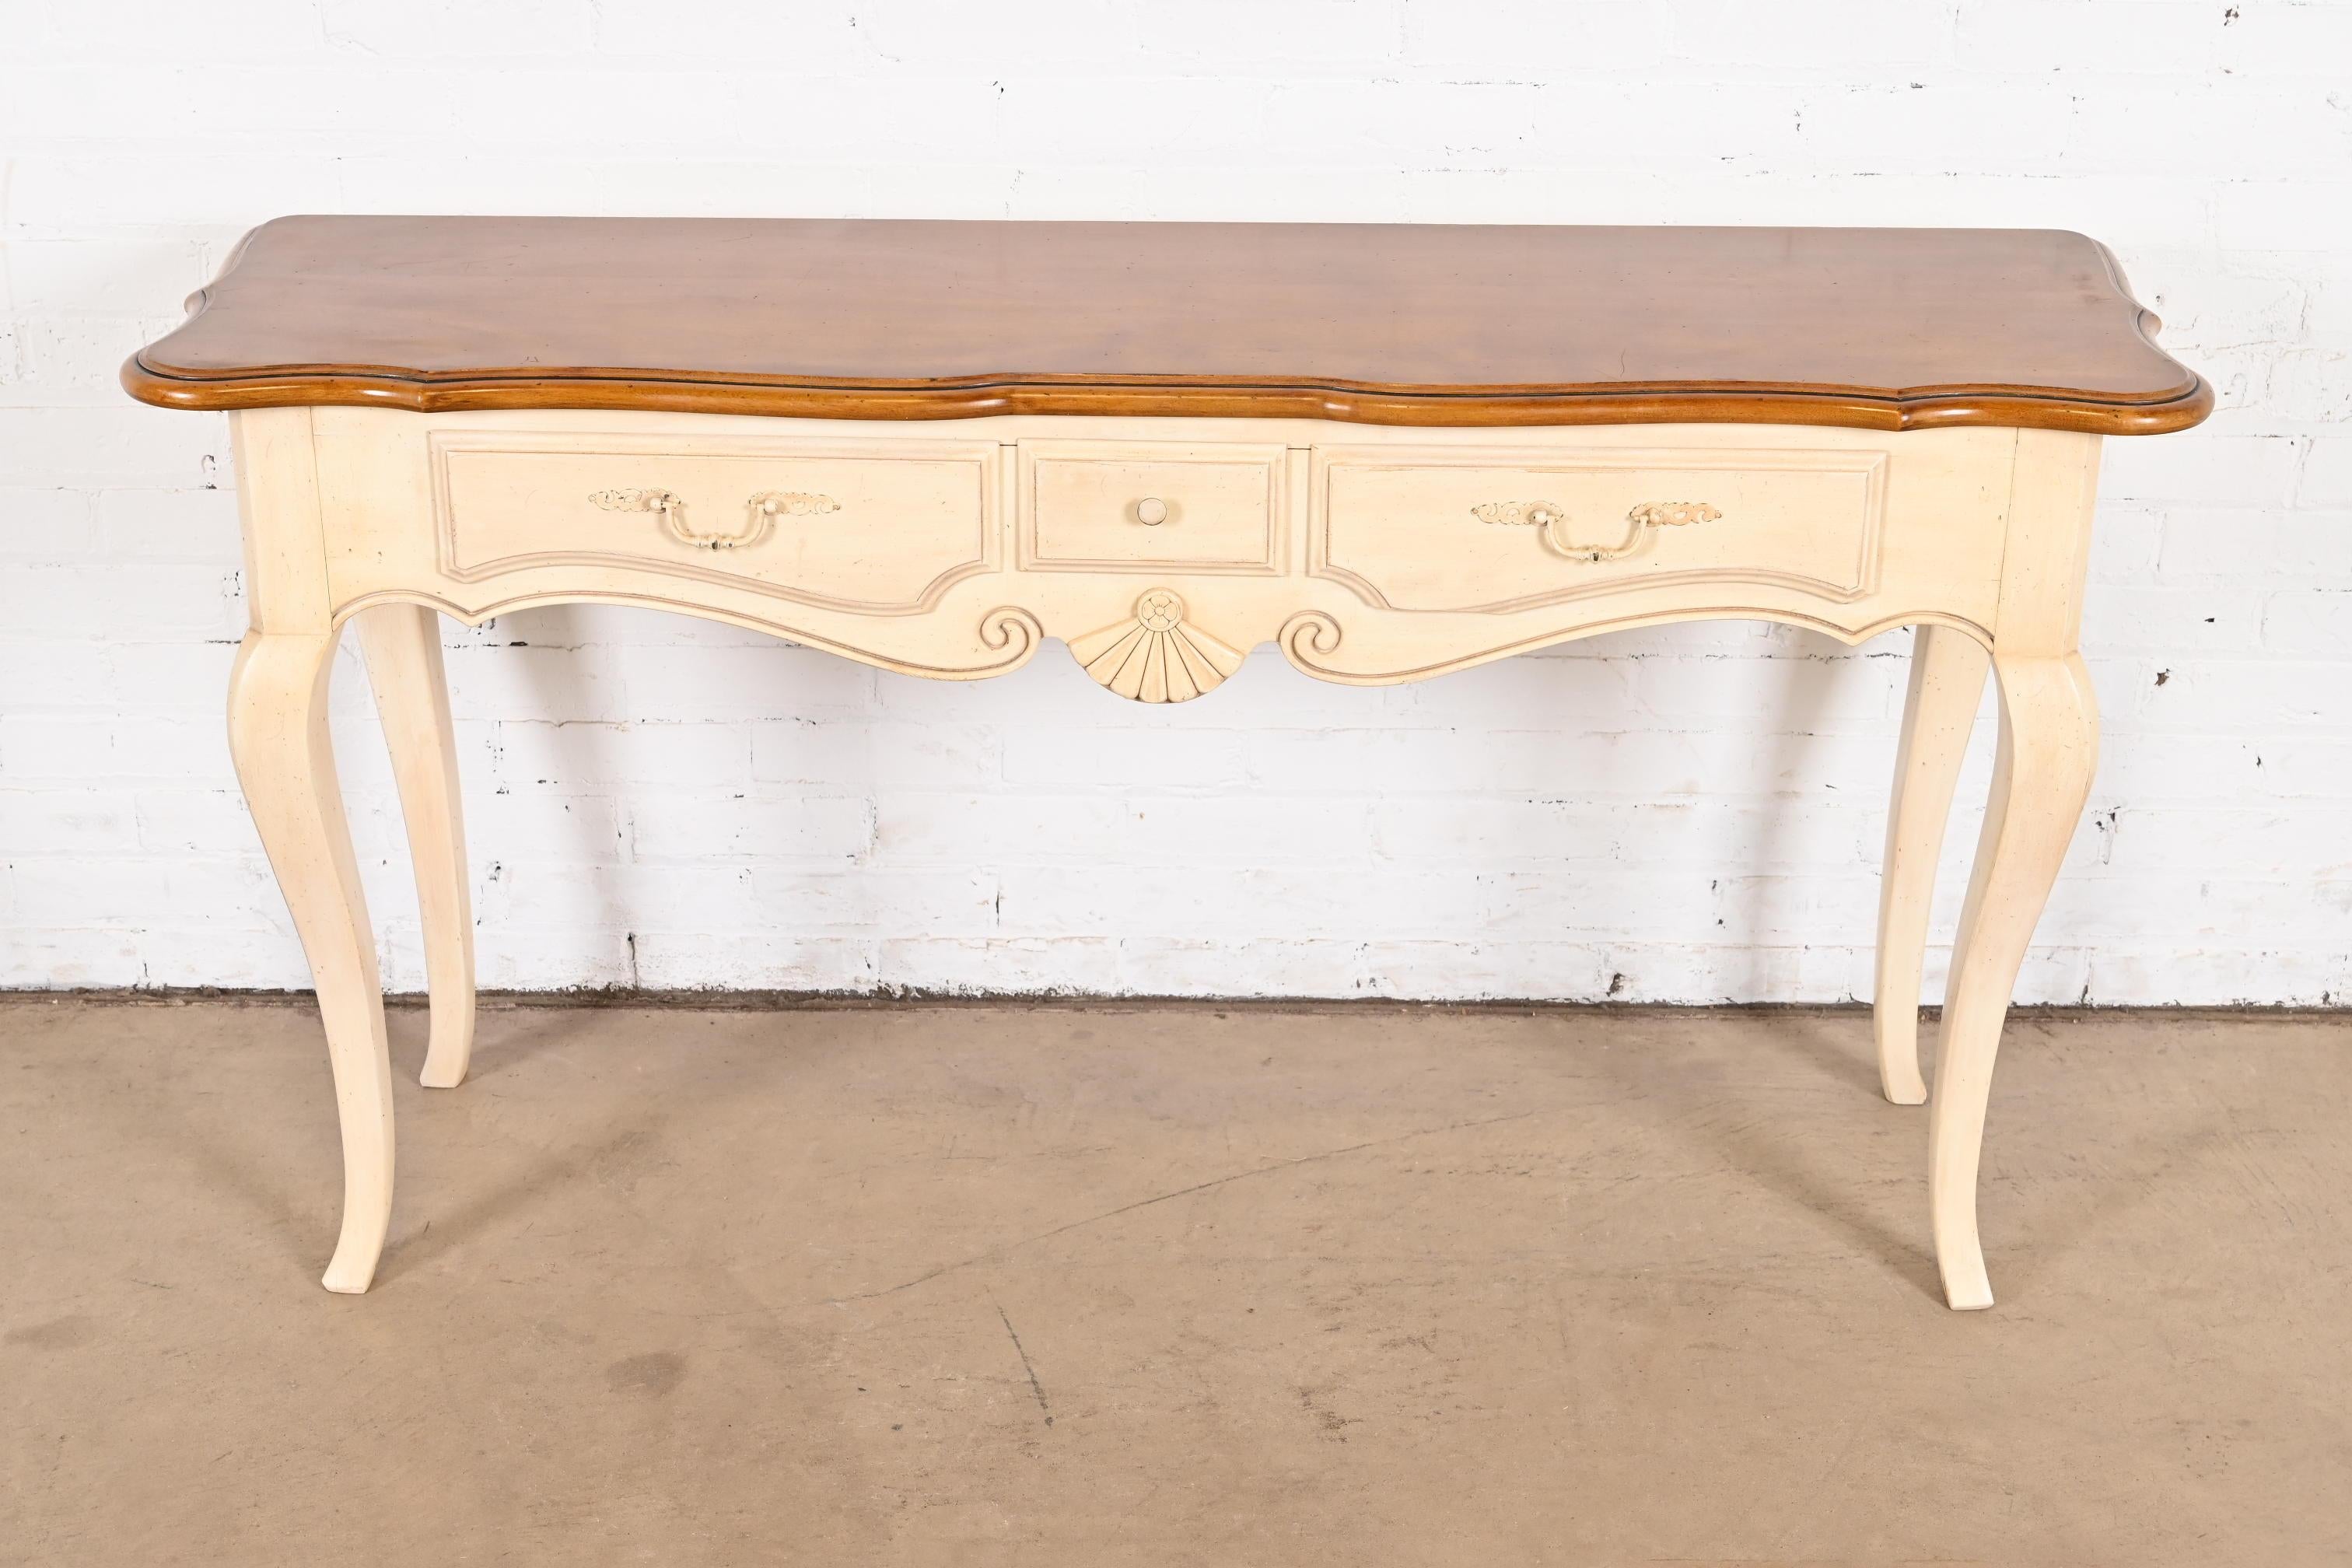 Ein prächtiger Konsolentisch mit drei Schubladen im französischen Landhausstil im Stil von Louis XV oder ein Sofatisch

USA, ca. 1990er Jahre

Weiß lackiertes, massives Ahornholz, mit natürlicher Ahornplatte.

Maße: 55,25 